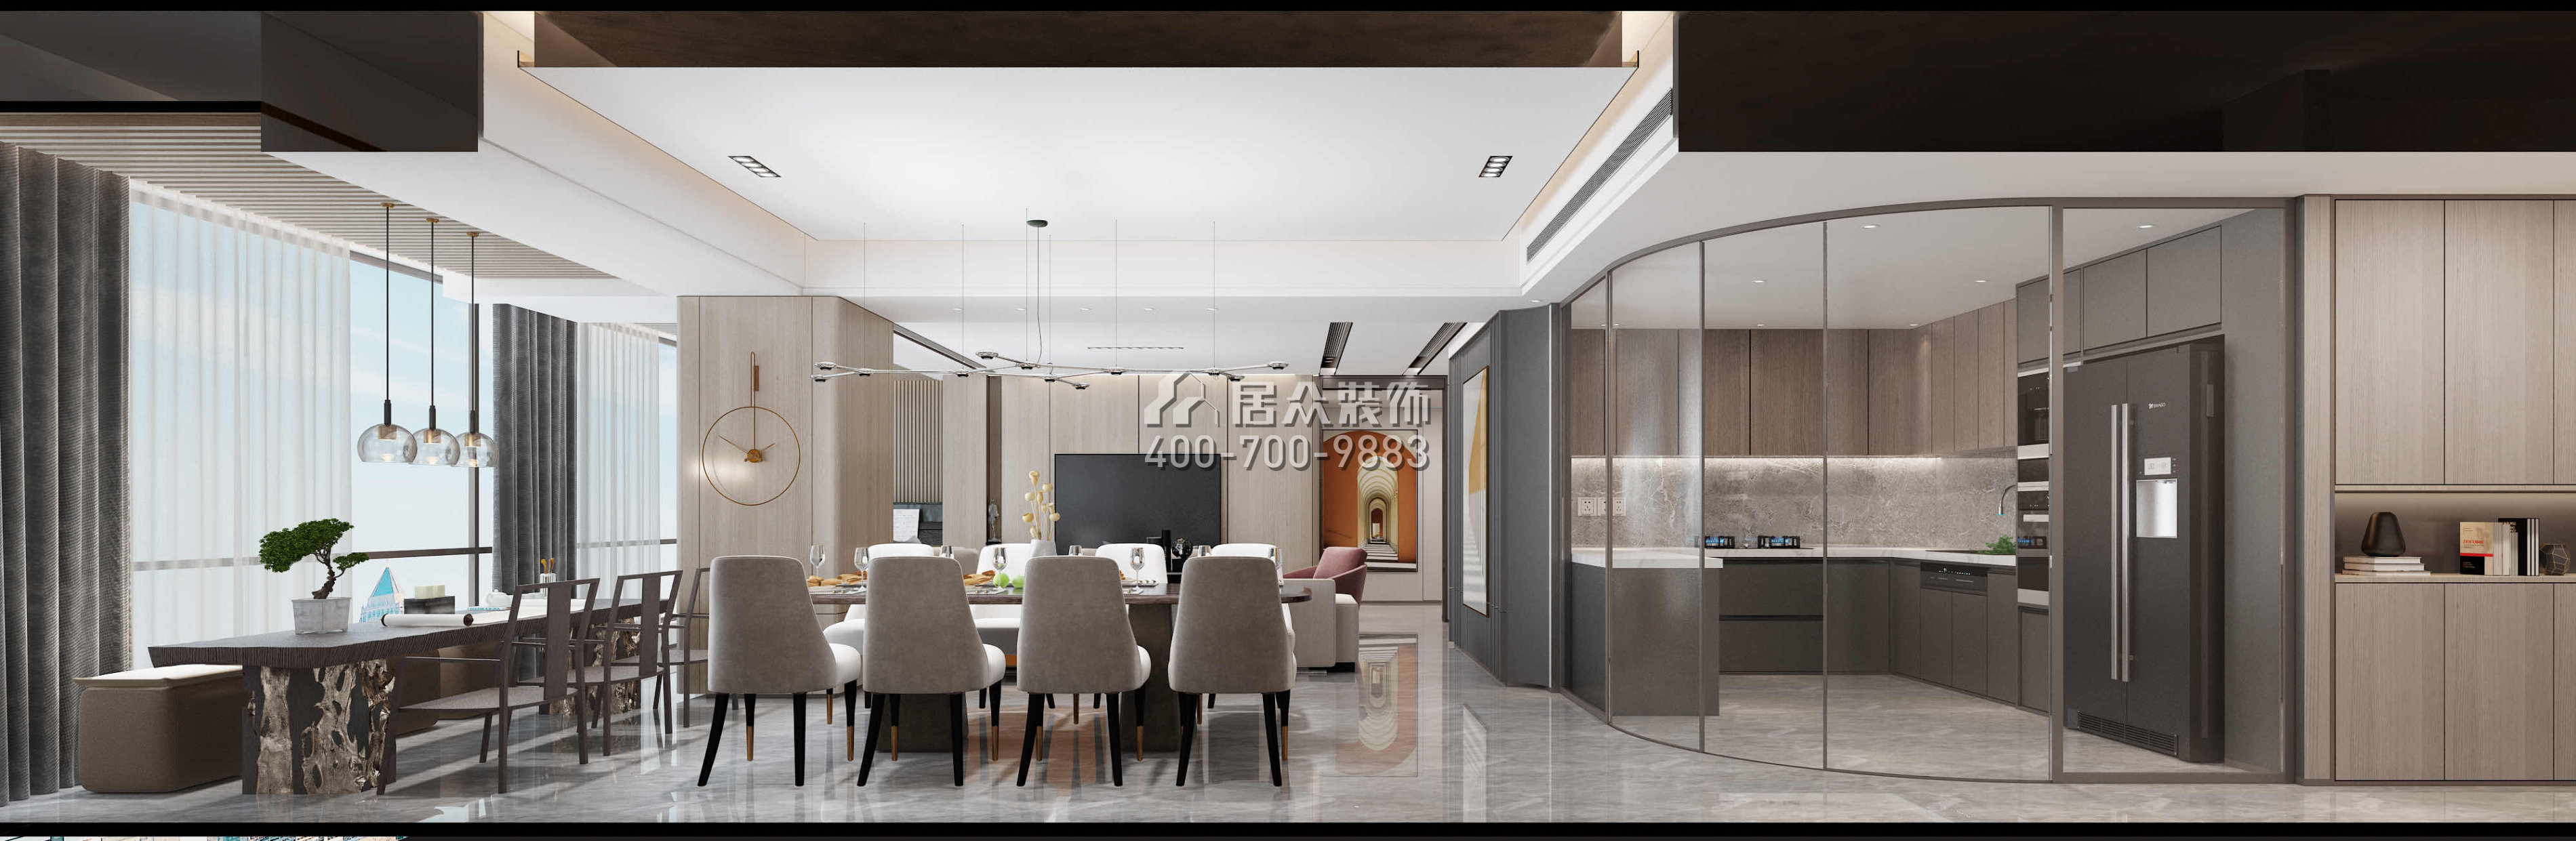 华润城润府198平方米现代简约风格平层户型客餐厅一体装修效果图